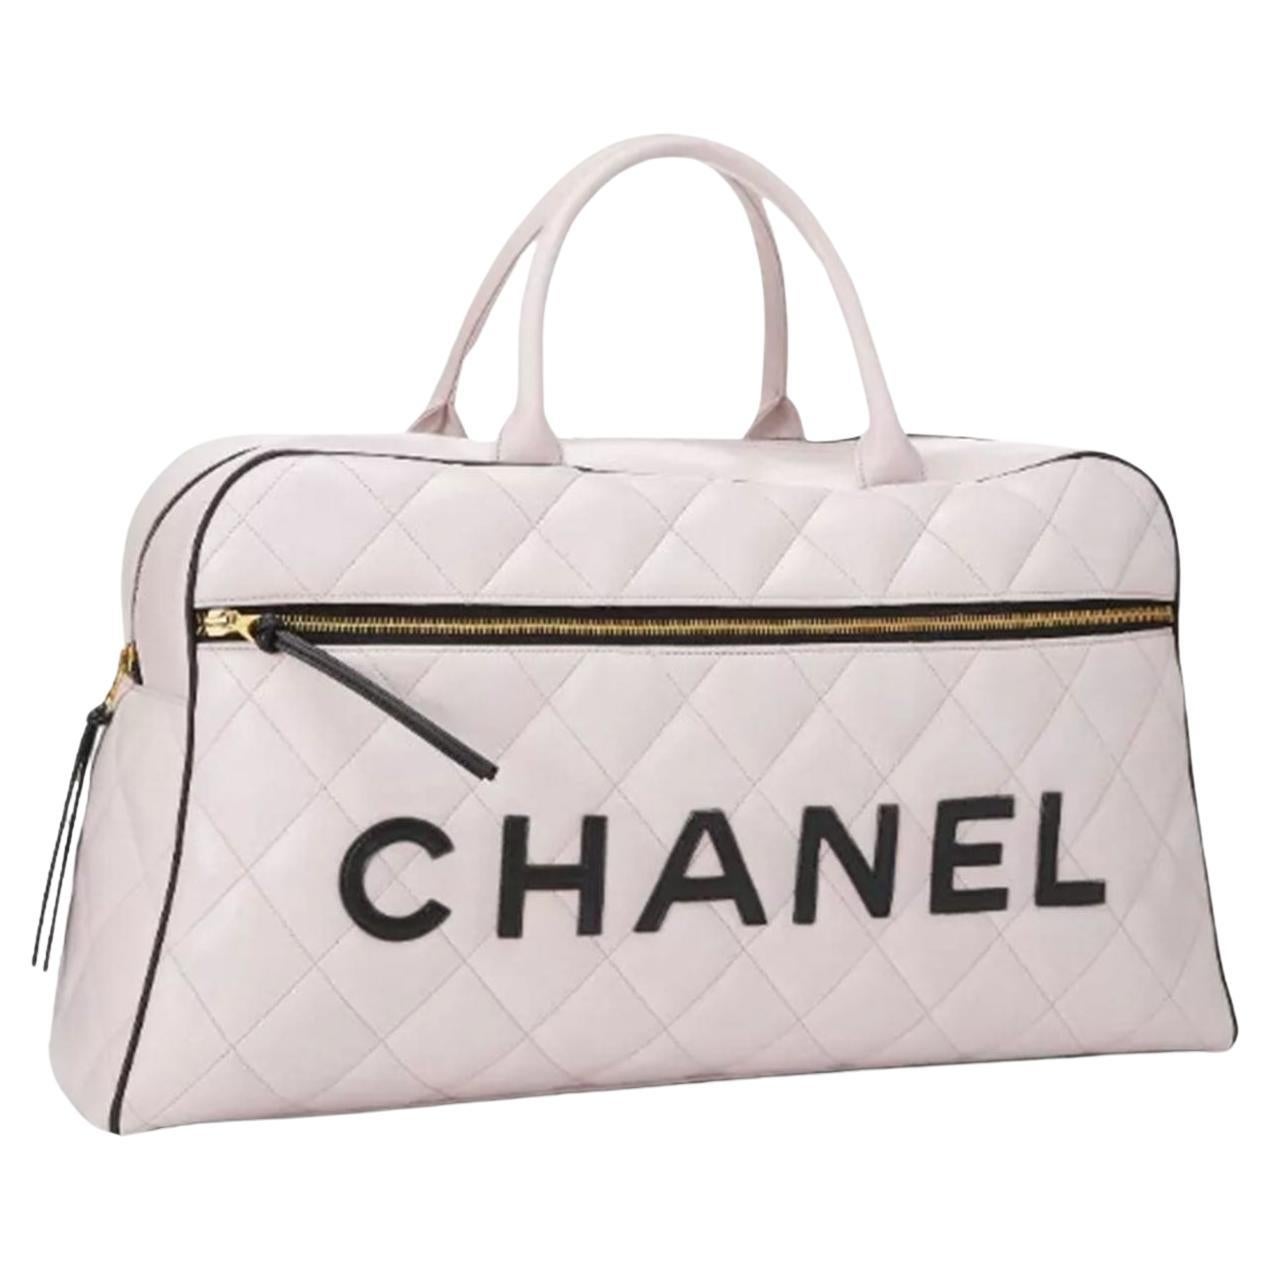 Sac de voyage Chanel Duffel en cuir blanc et noir, édition limitée en vente